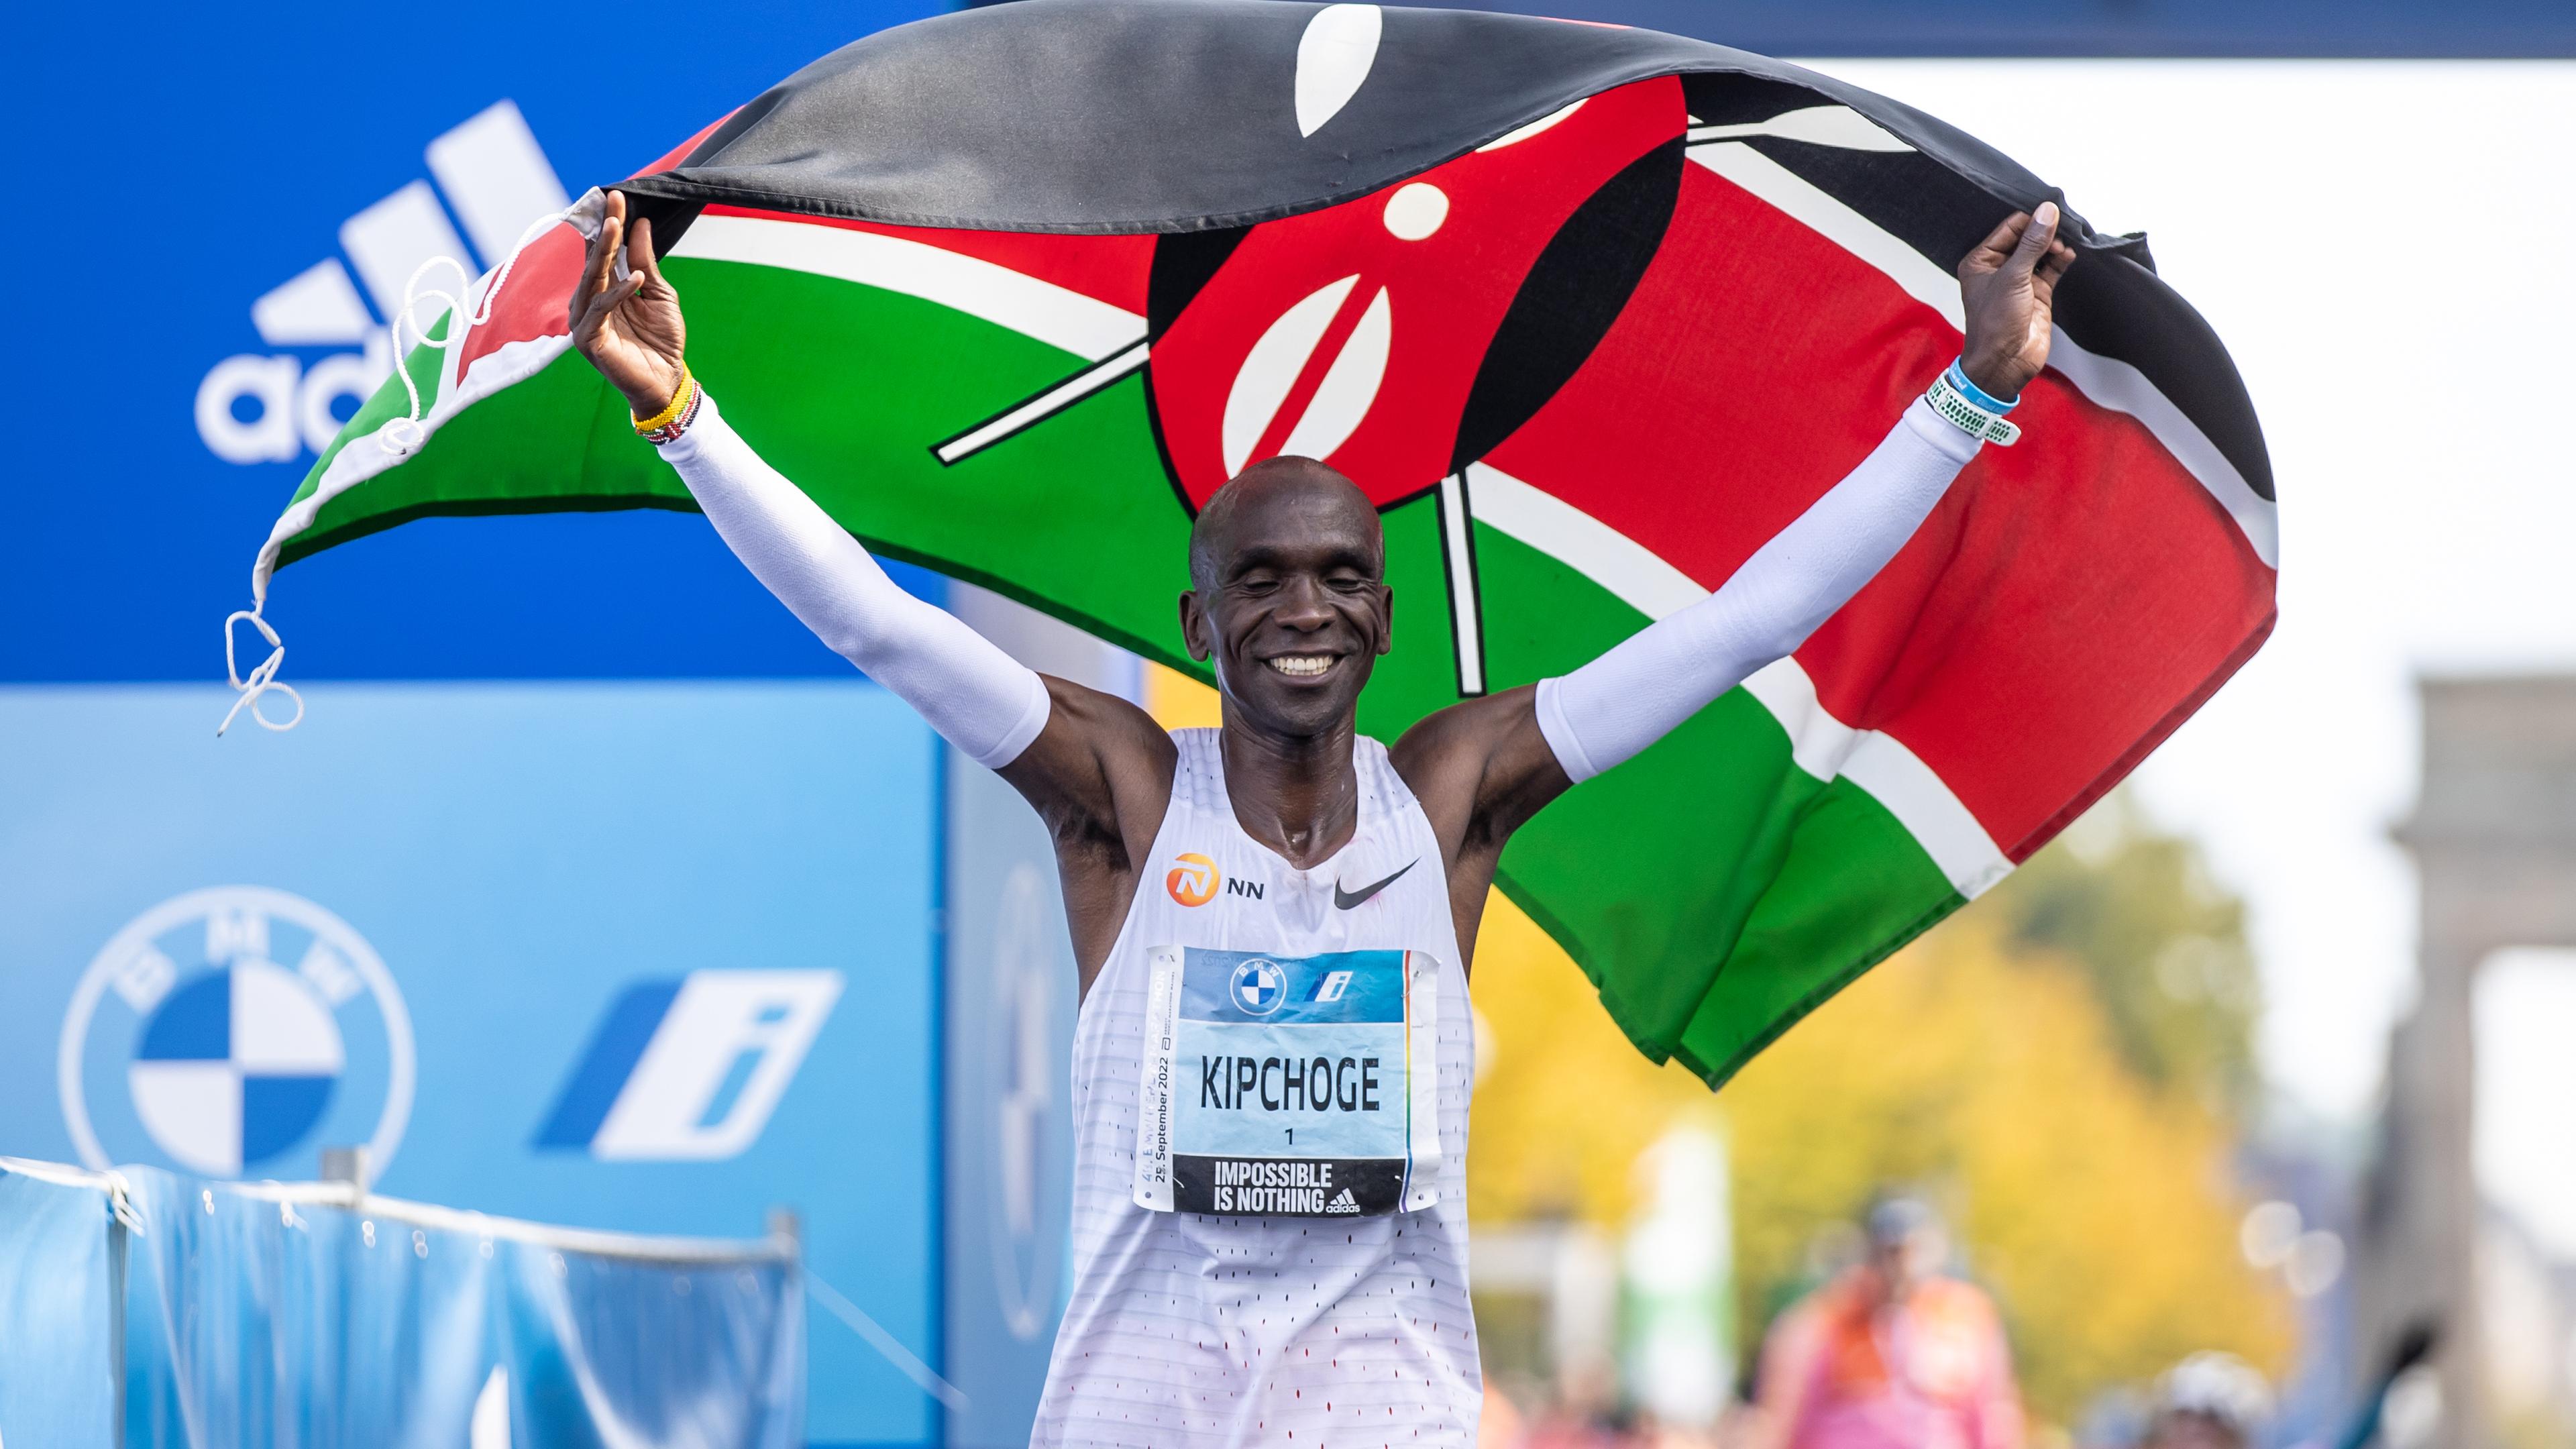 Eliud Kipchoge du Kenya célèbre après avoir franchi en premier la ligne d'arrivée du BMW Marathon de Berlin en 2:01:09 heures, améliorant ainsi son record du monde.